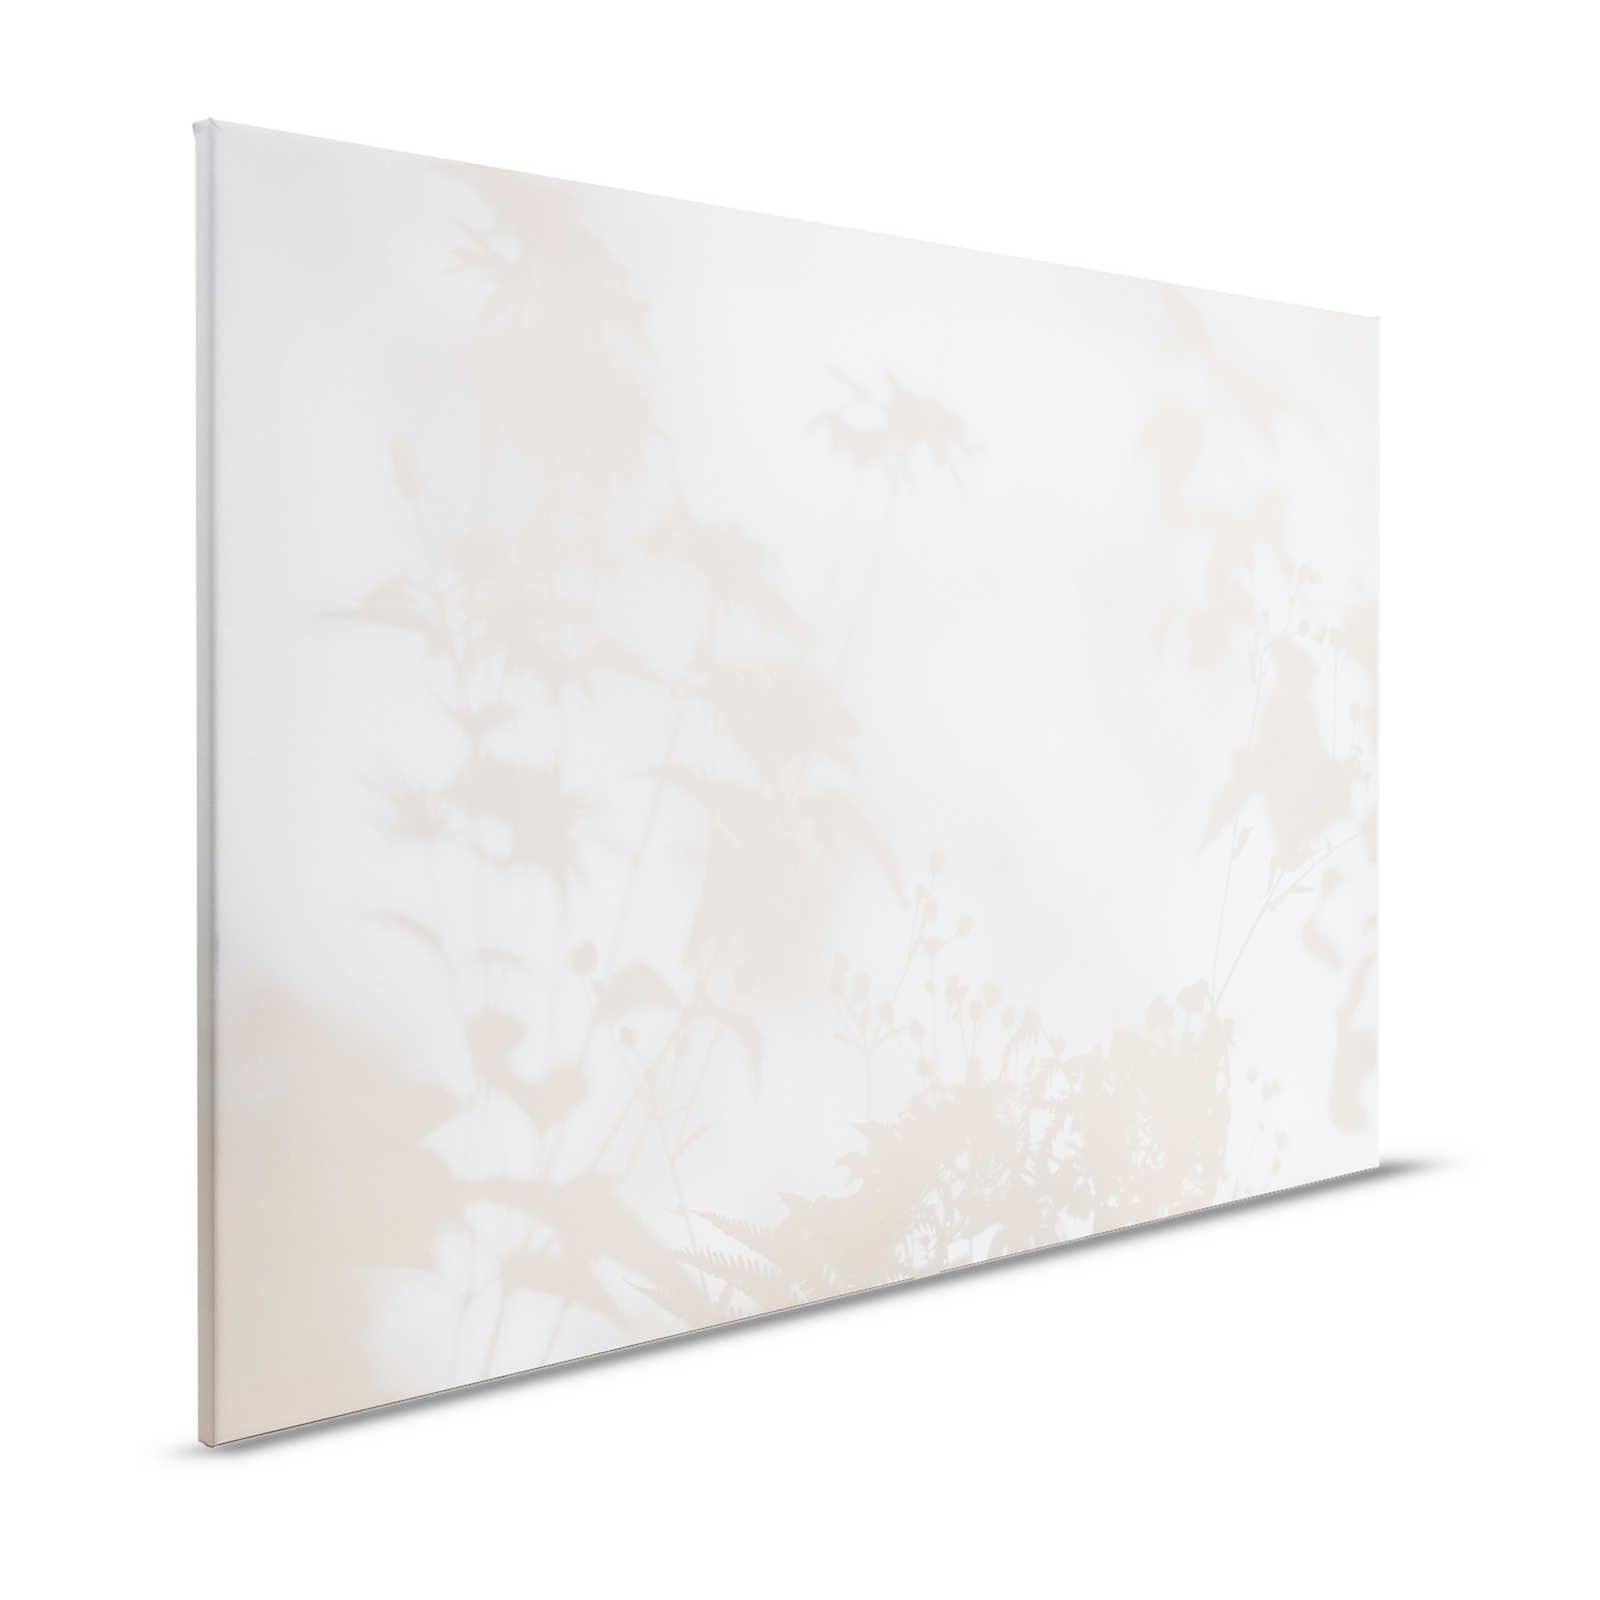 Shadow Room 1 - Natur Leinwandbild Beige & Weiß, verblasstes Design – 1,20 m x 0,80 m
